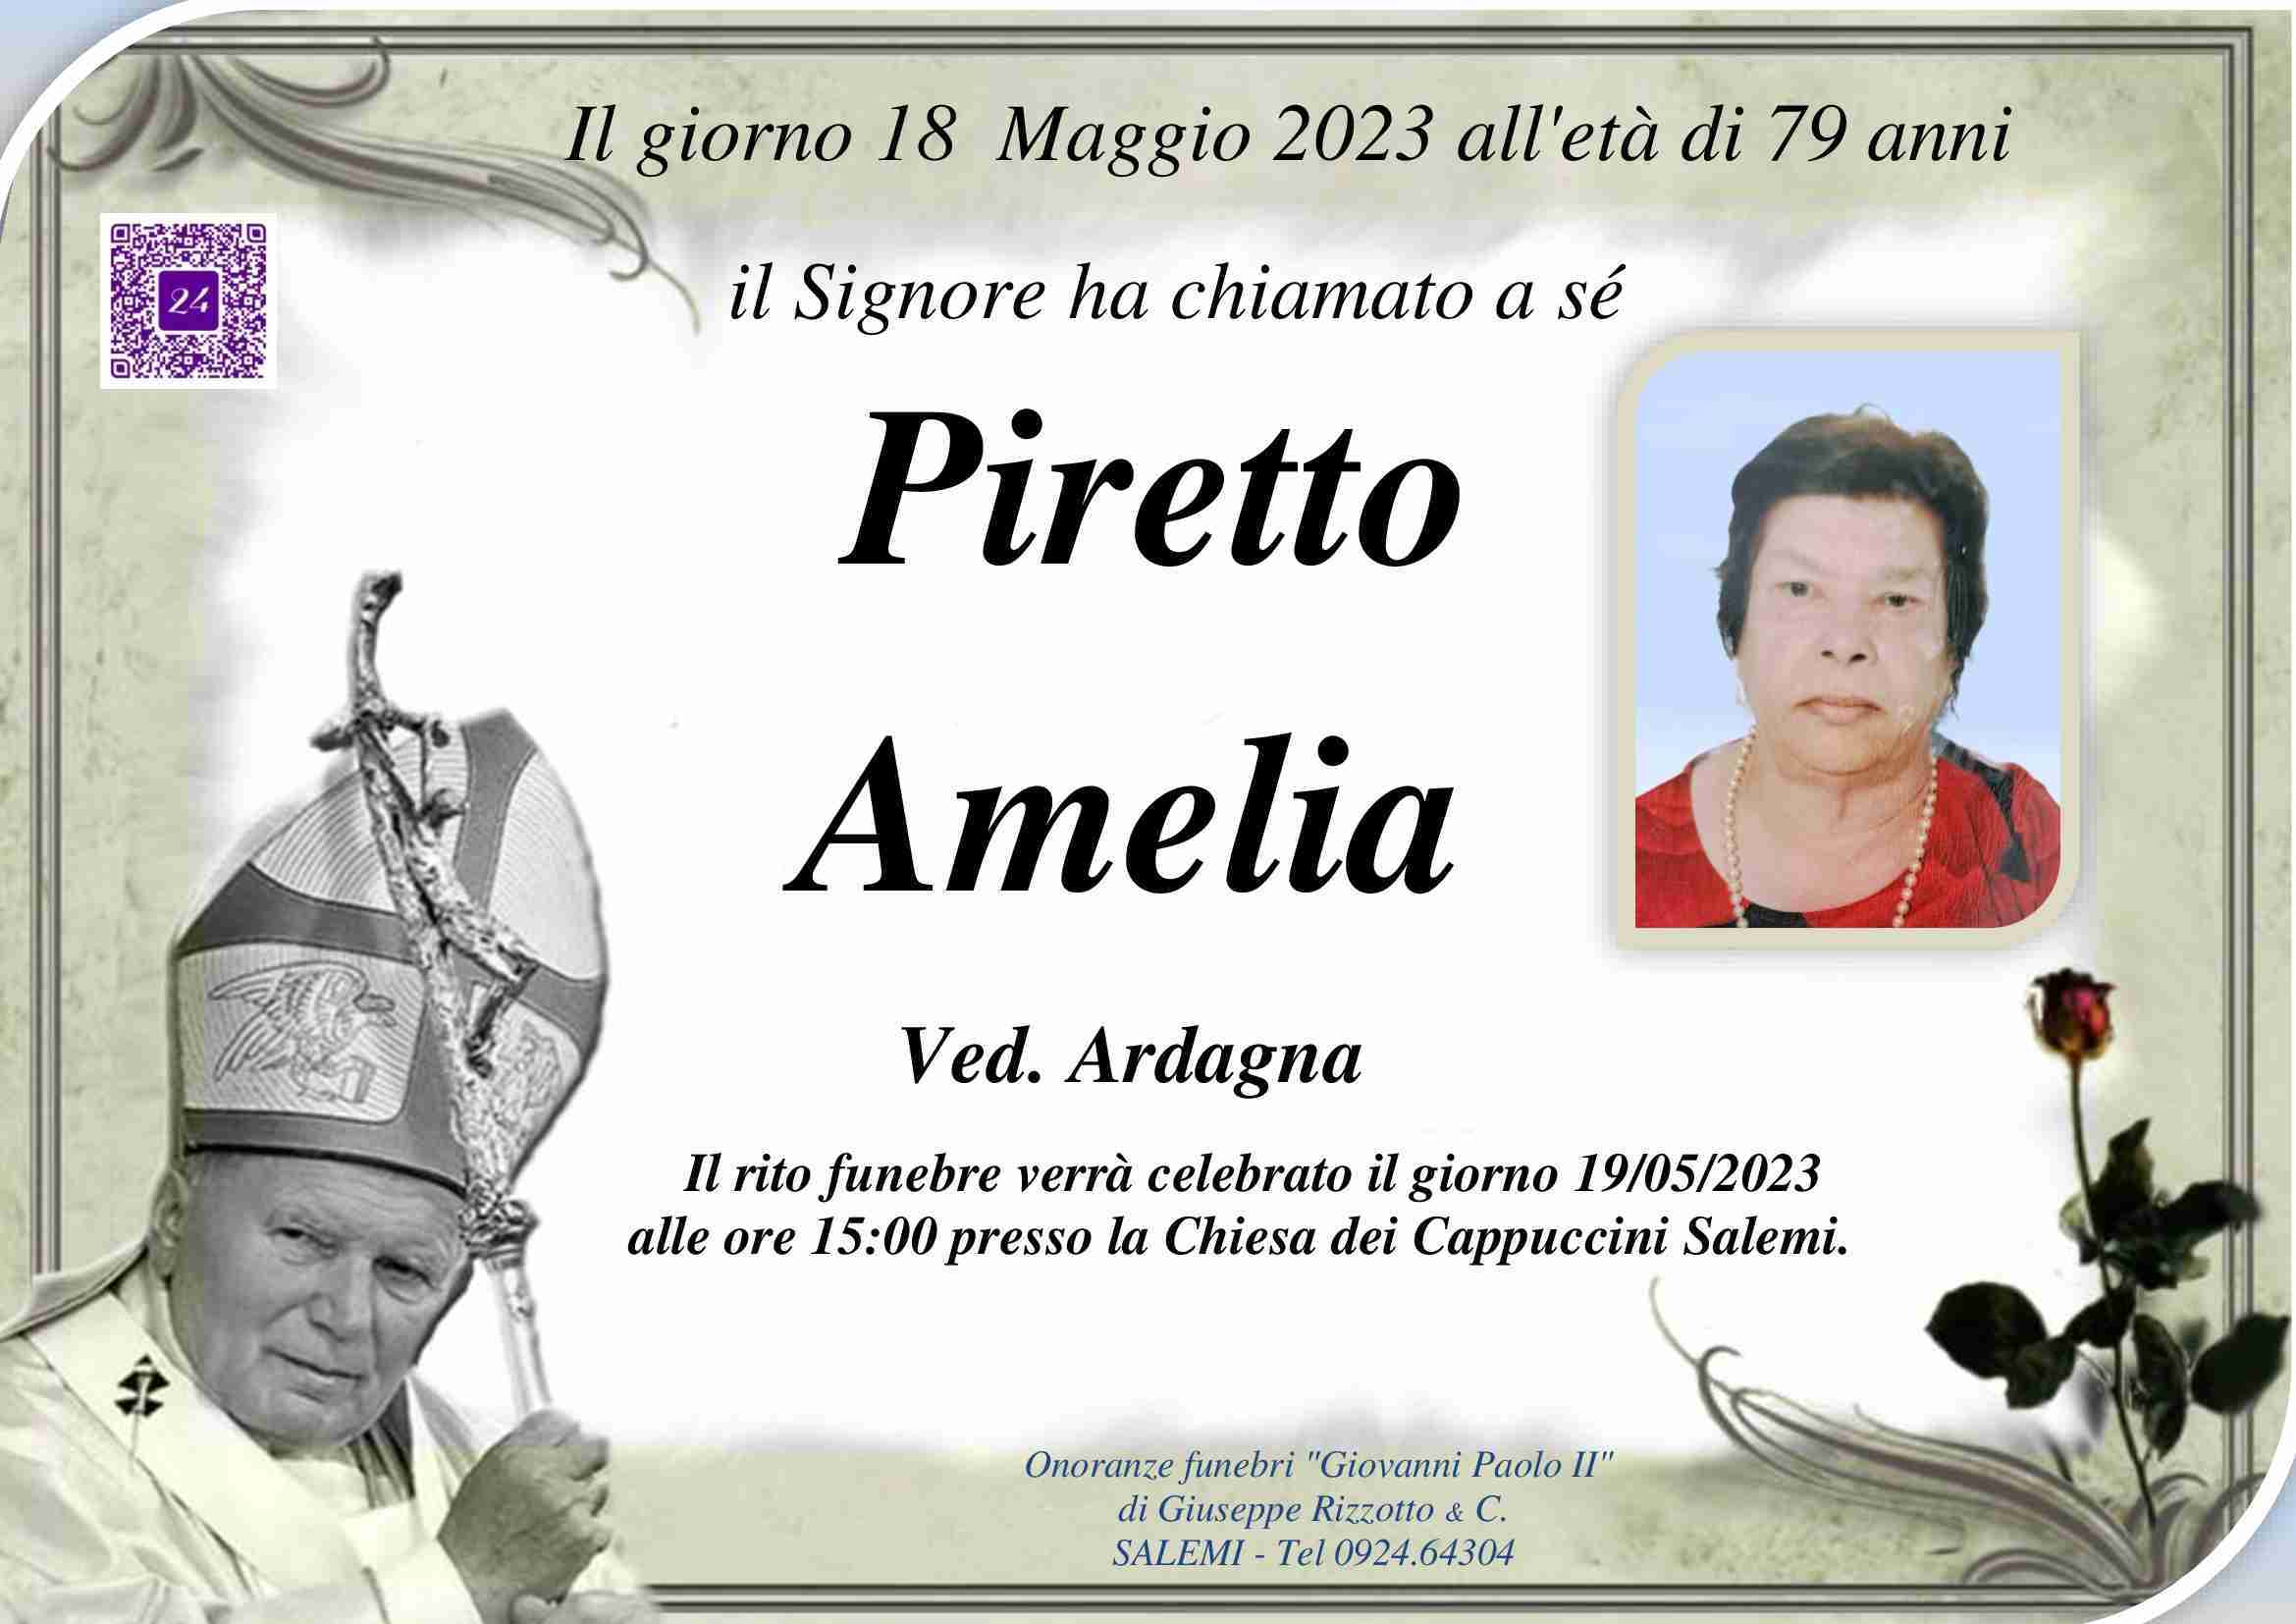 Amelia Piretto